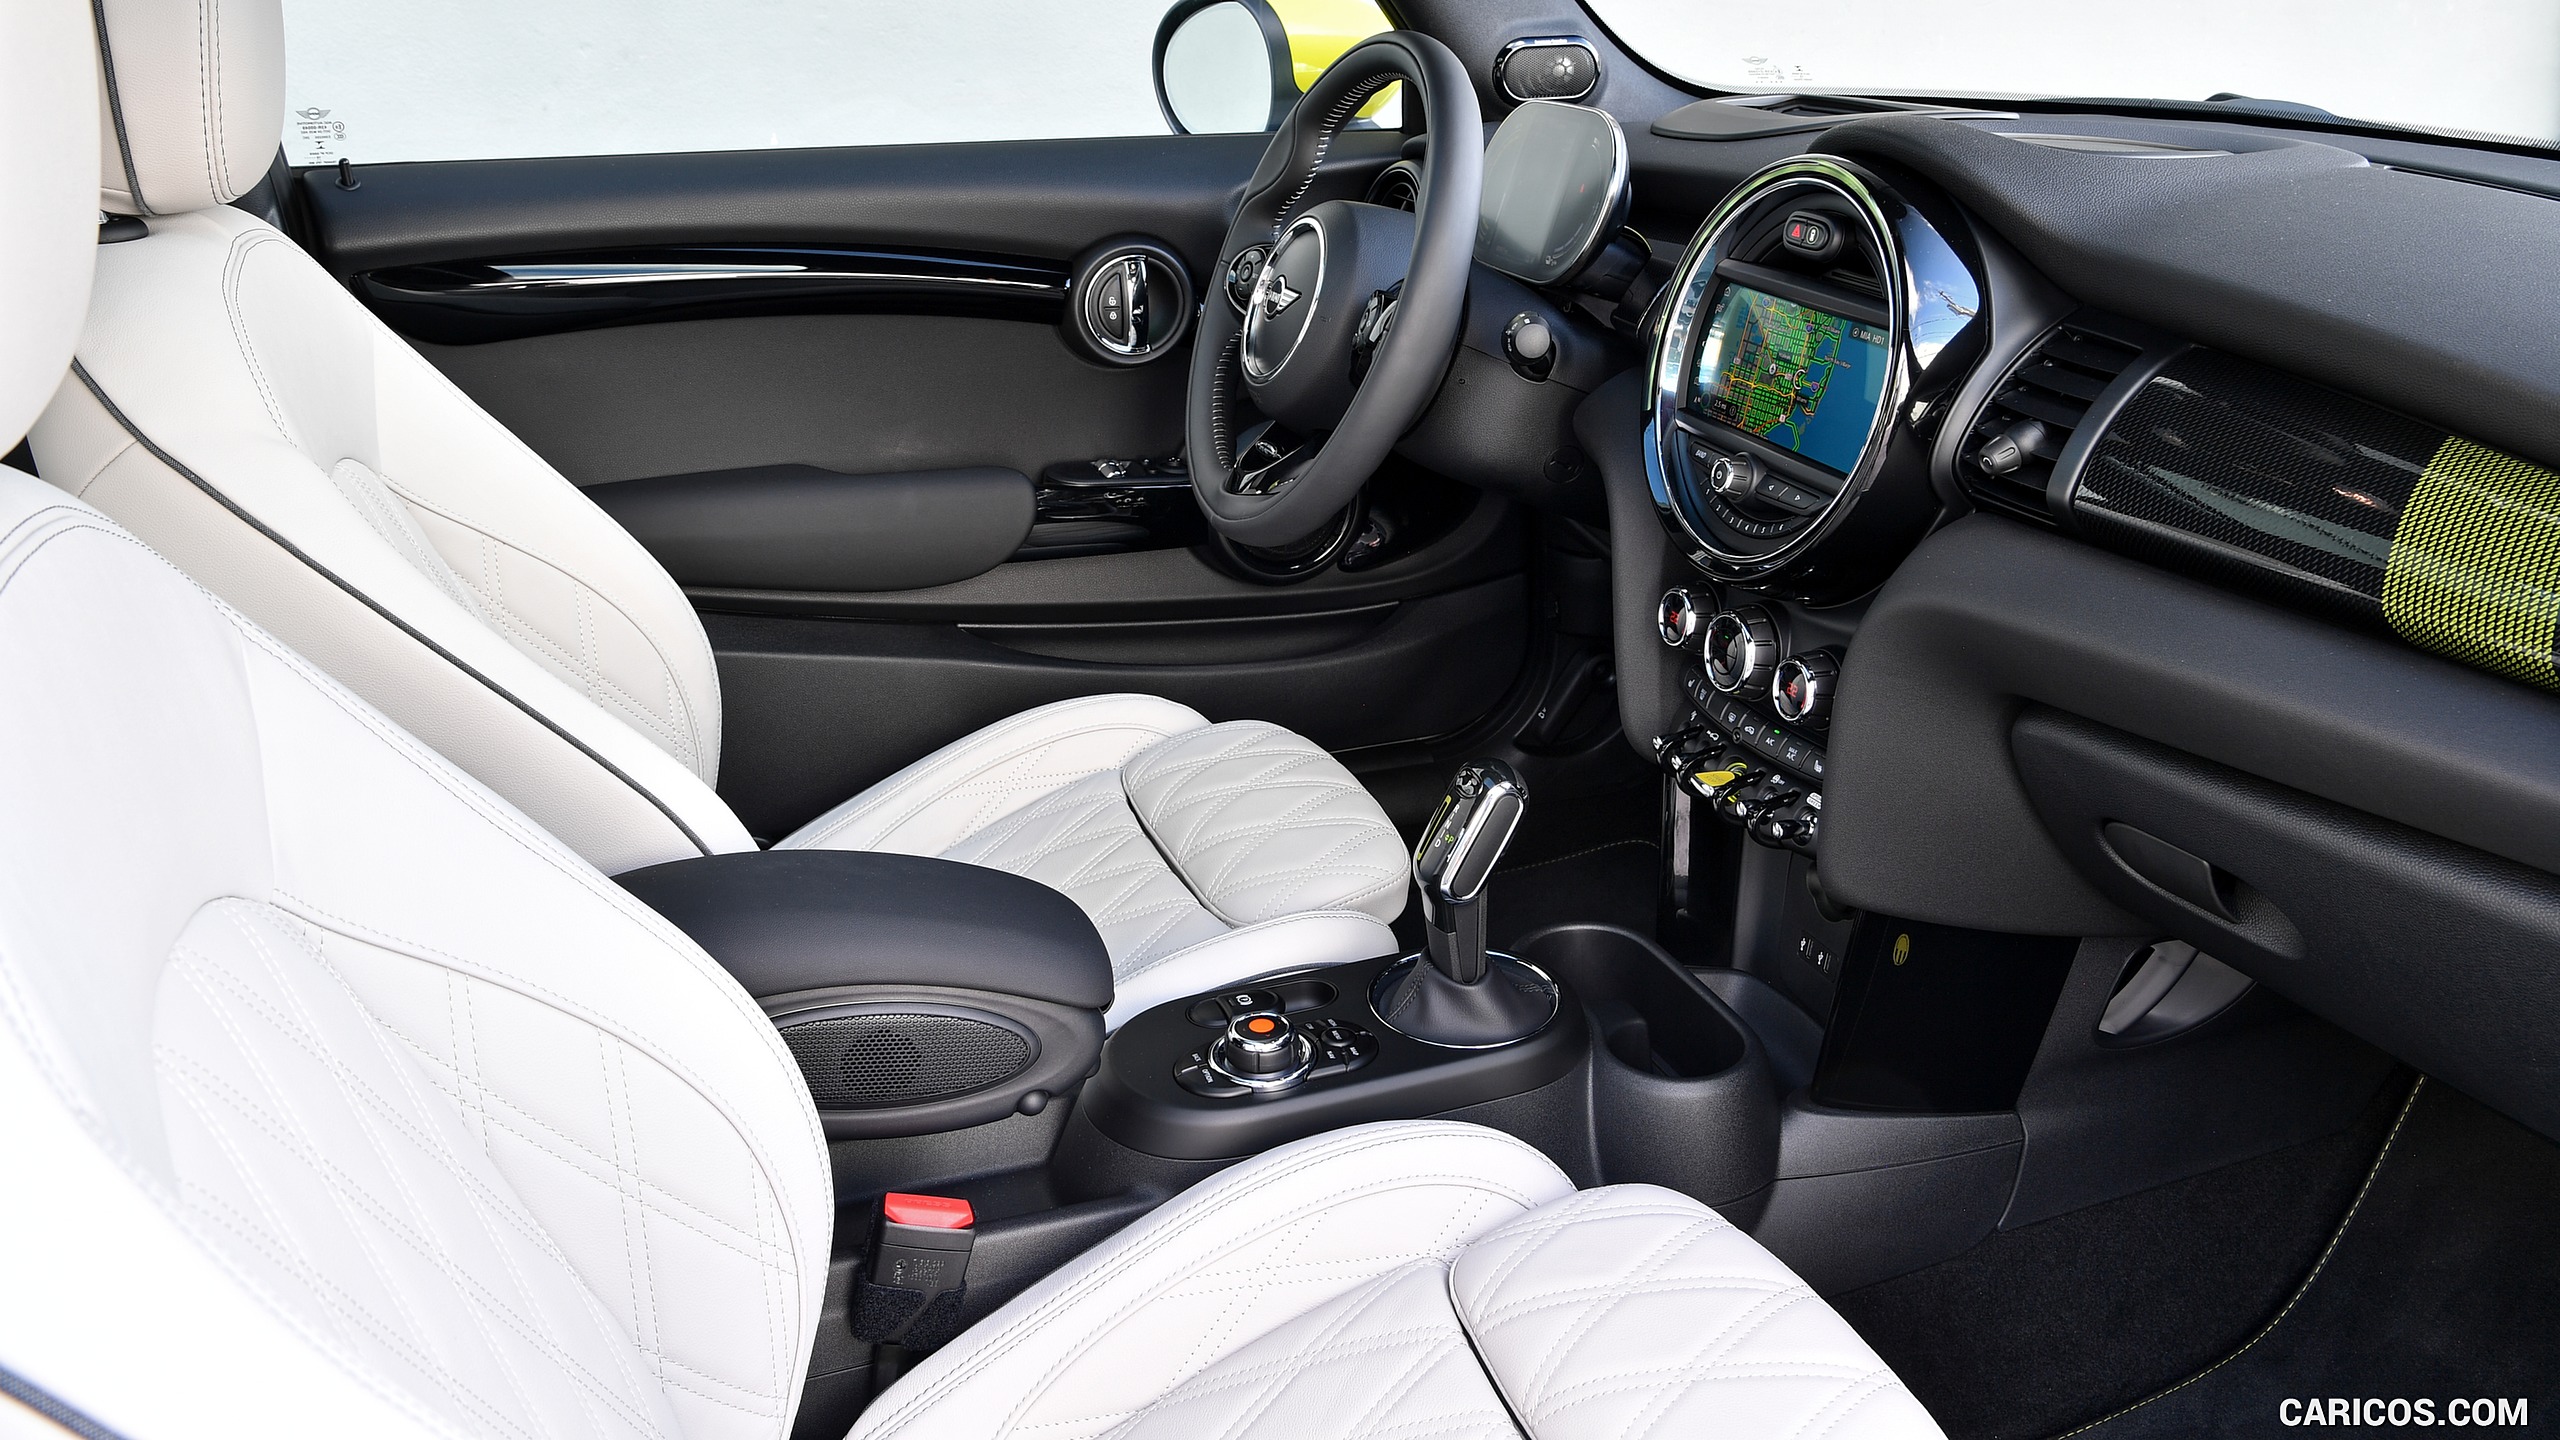 2020 MINI Cooper SE Electric - Interior, Seats, #415 of 421